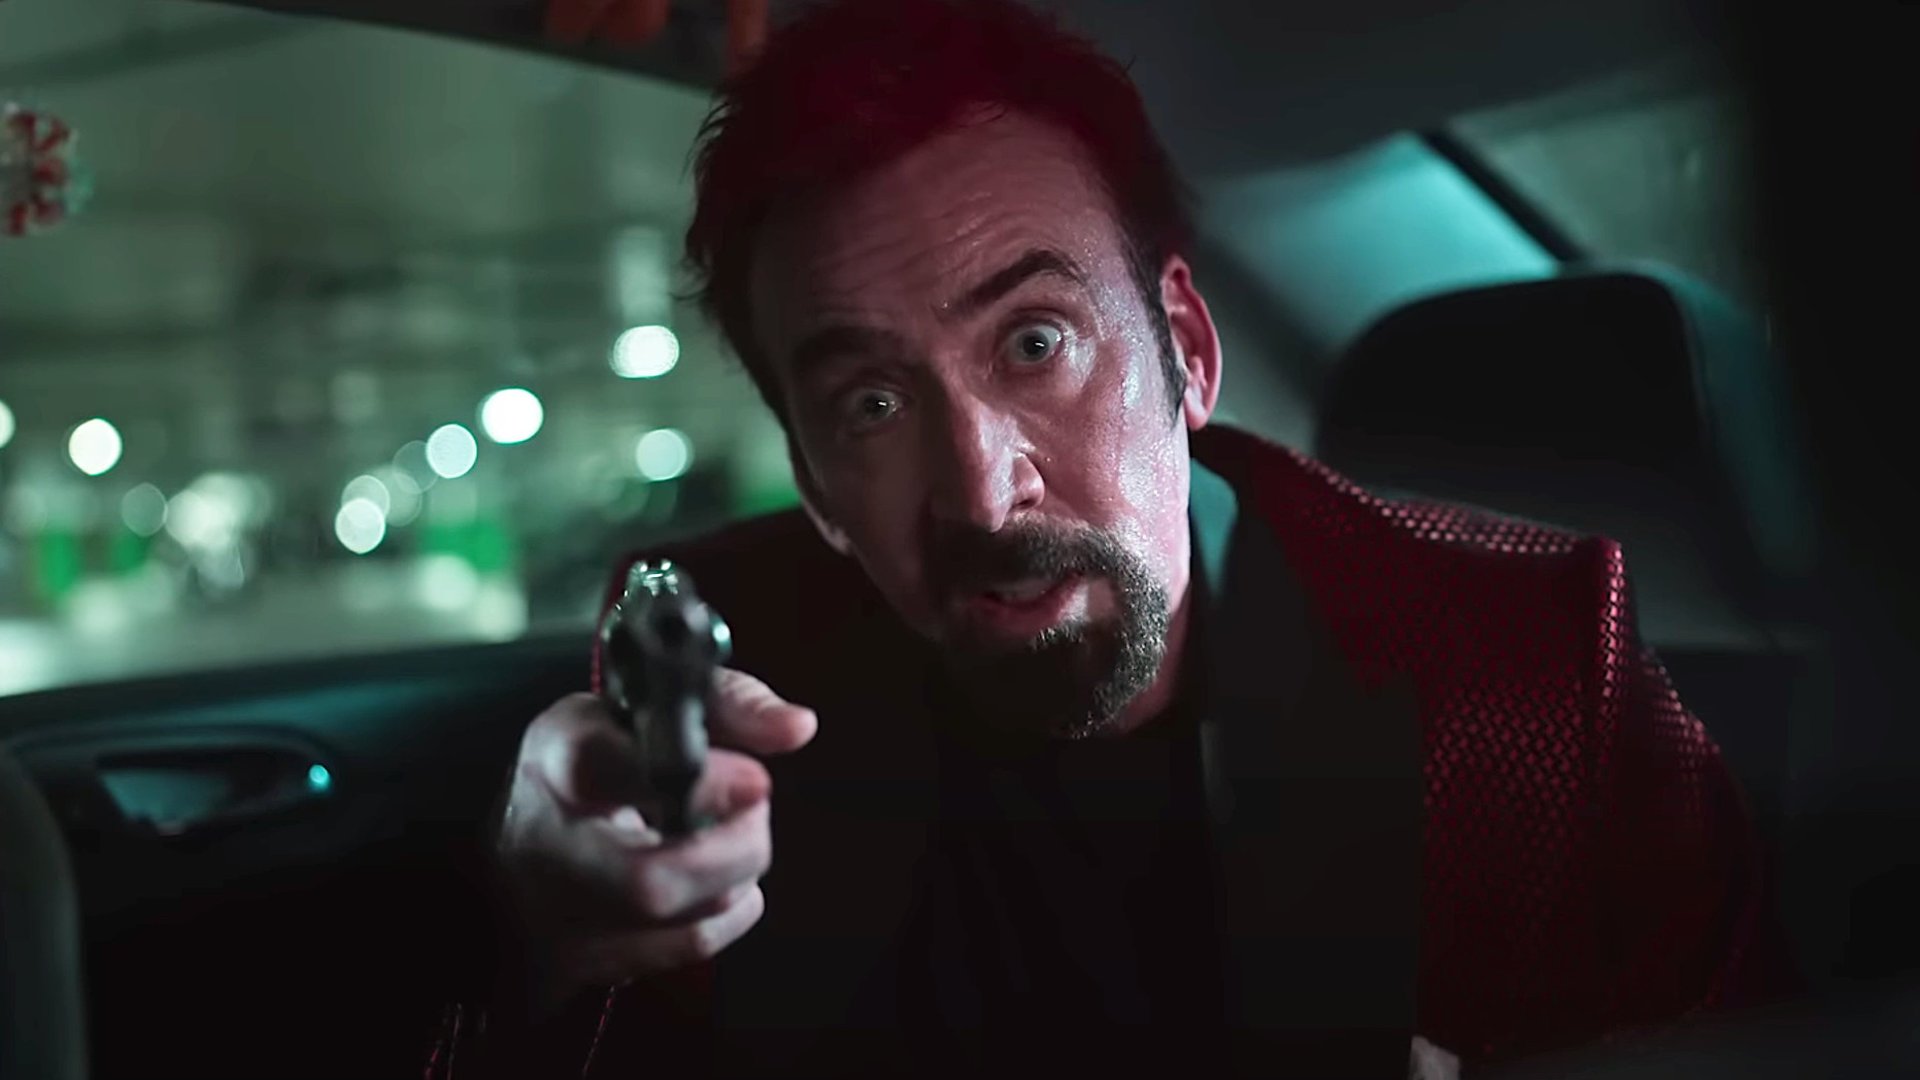 #Auf Dracula folgt der Teufel: Erster irrer Trailer mit Nicolas Cage im absoluten Overkill-Modus